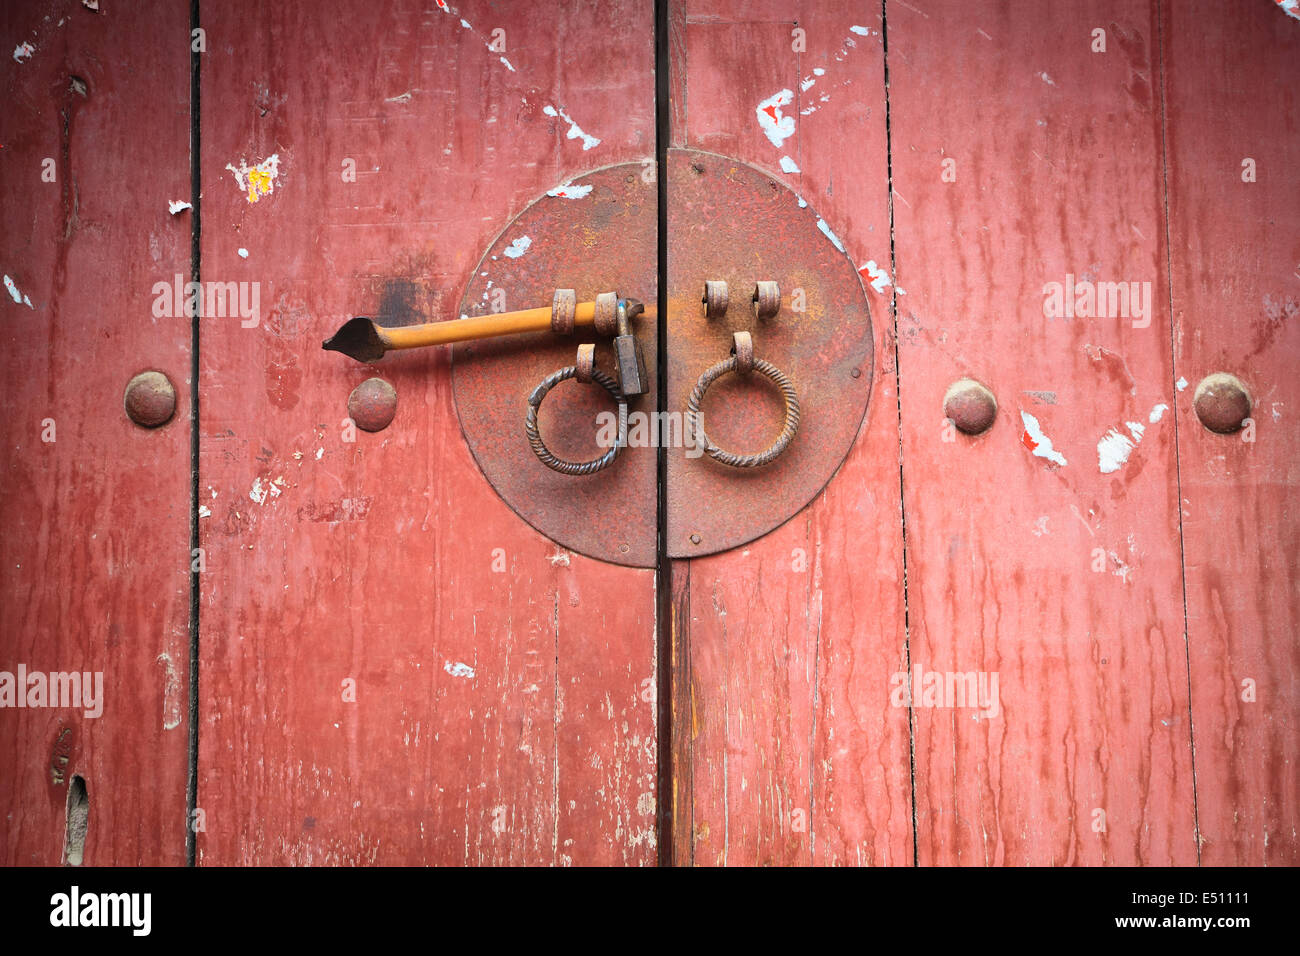 old wooden door with knocker Stock Photo